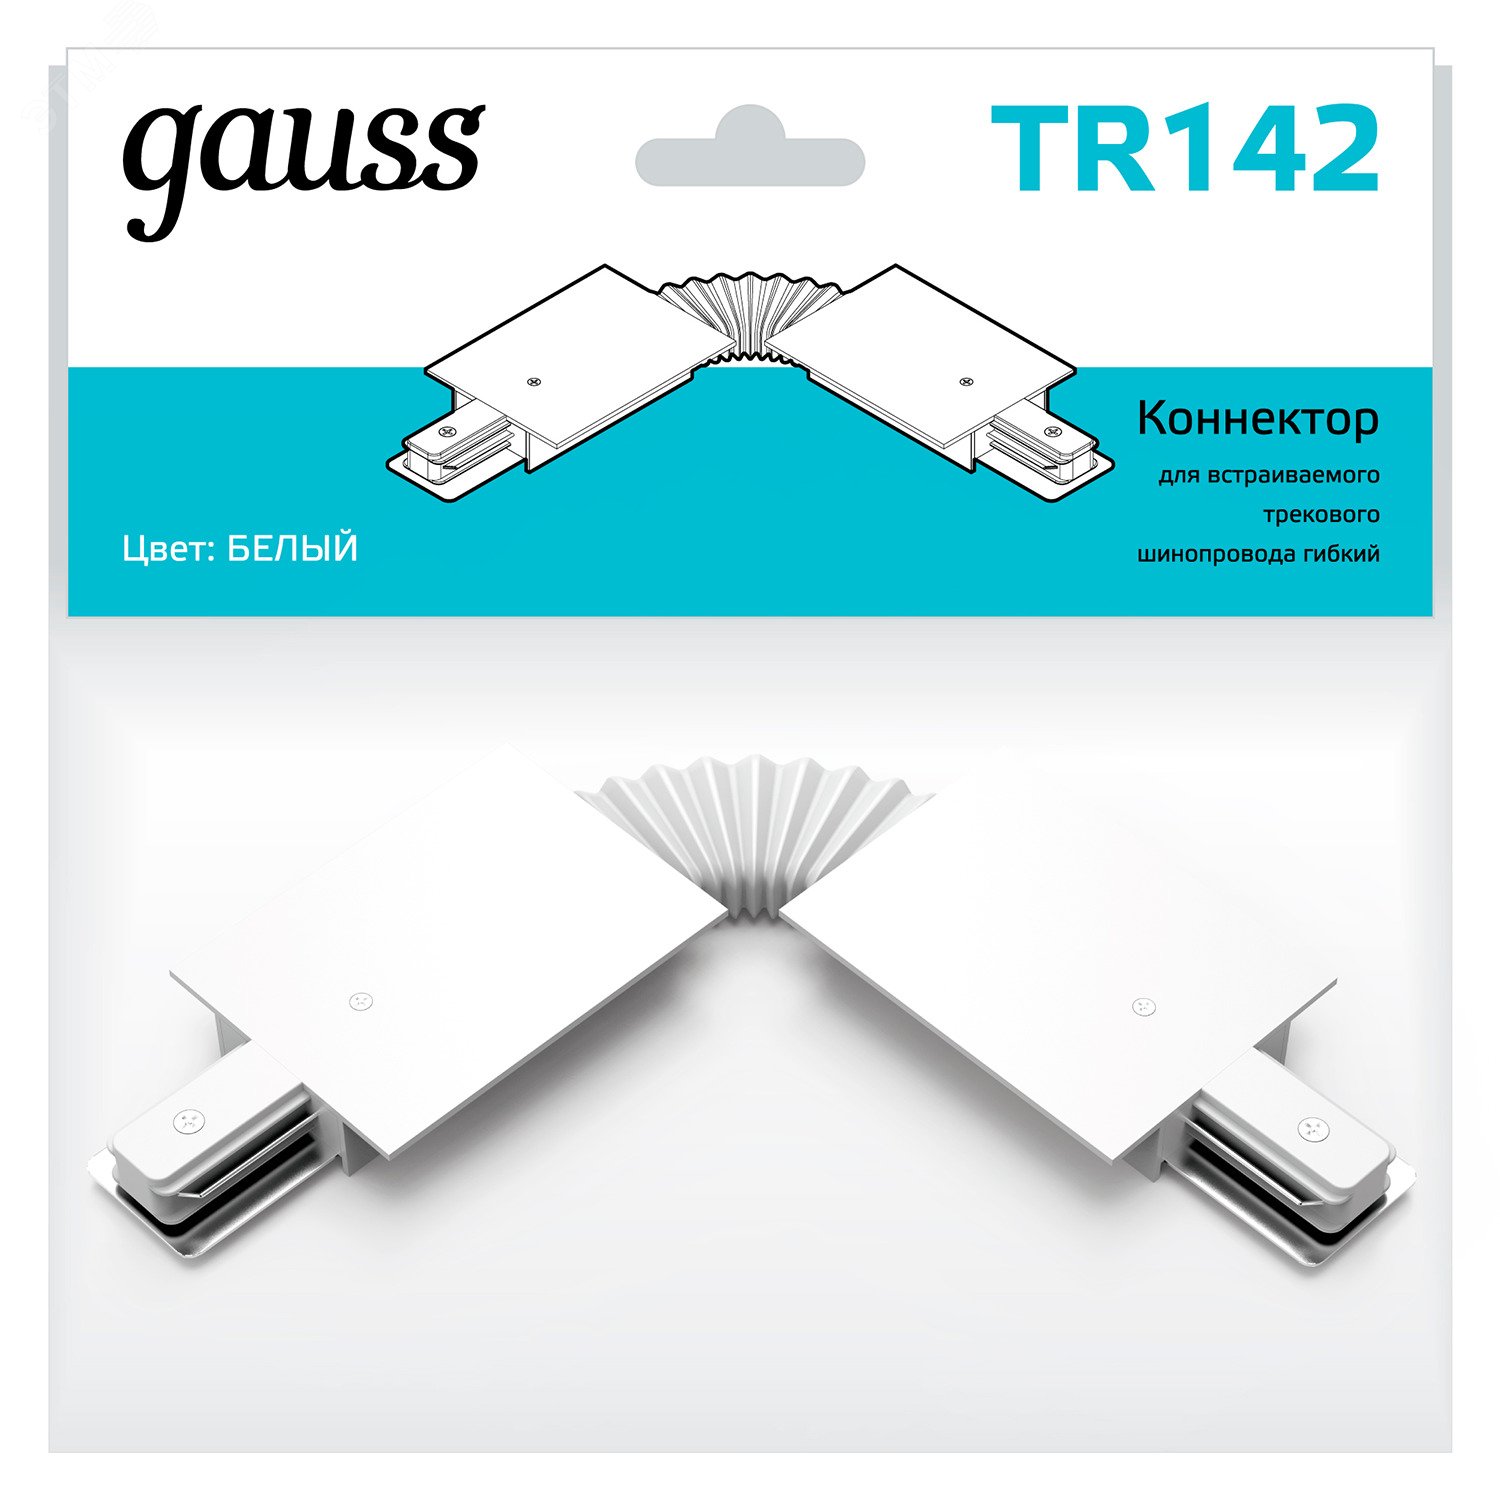 Коннектор для встраиваемых трековых шинопроводов гибкий (I) белый однофазный TR142 GAUSS - превью 5